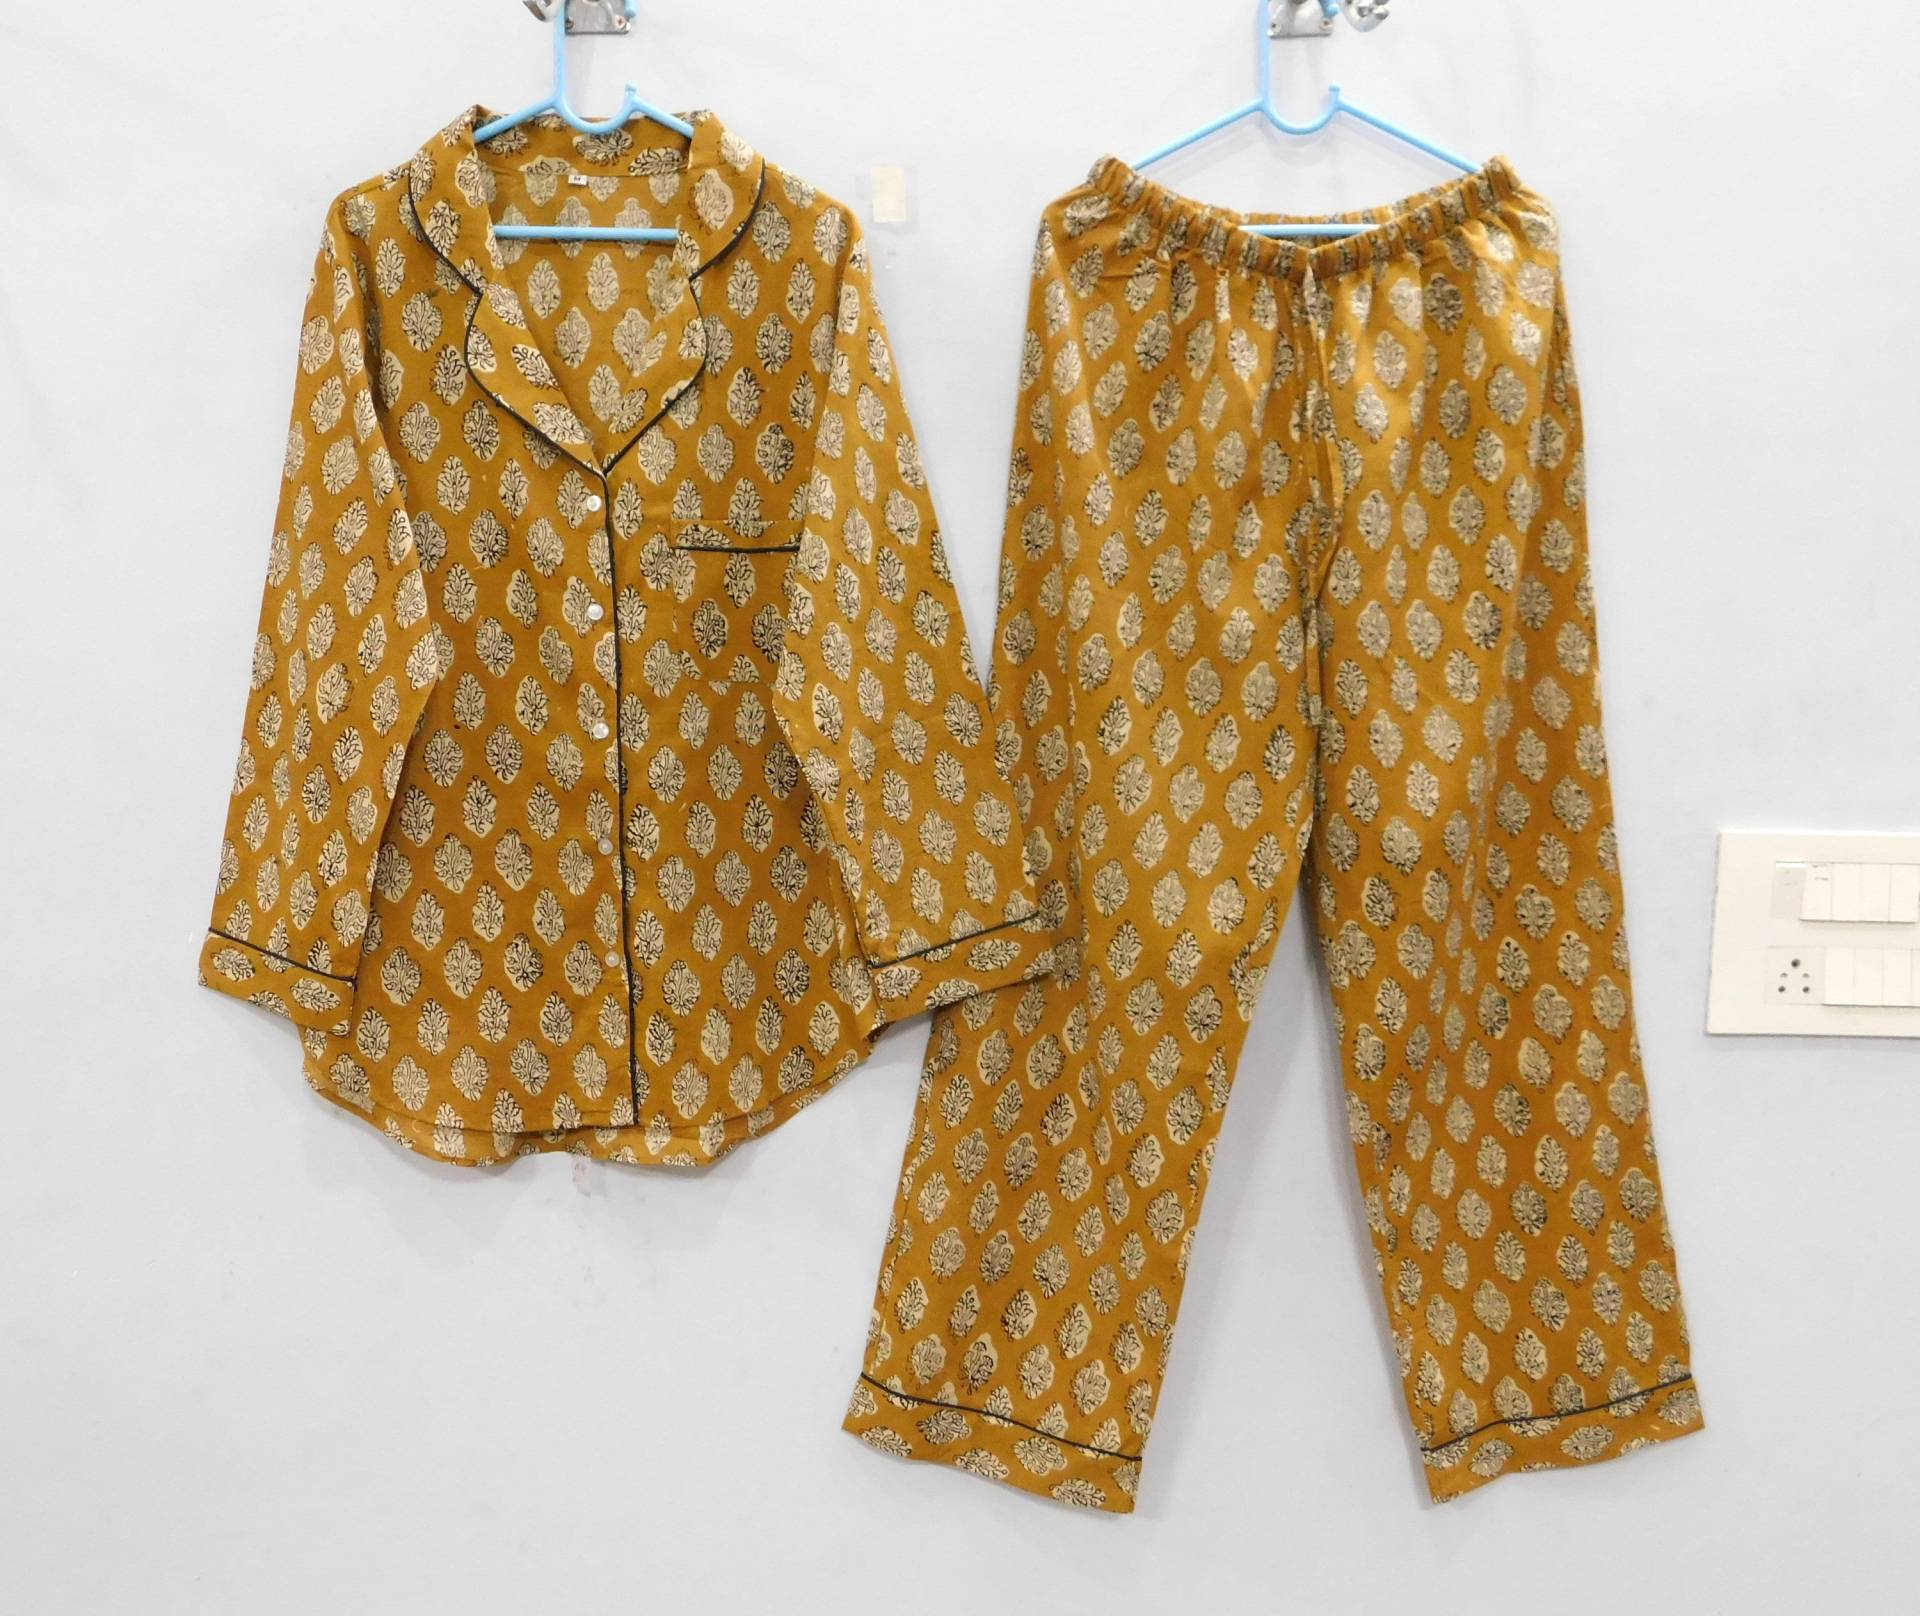 Baumwollblock Prnt Pyjama Set, Frauen Tragen Winter Schlafanzug, Boho Hippie Nachtwäsche Nachthemd, Baumwoll von Vintagevilla1966